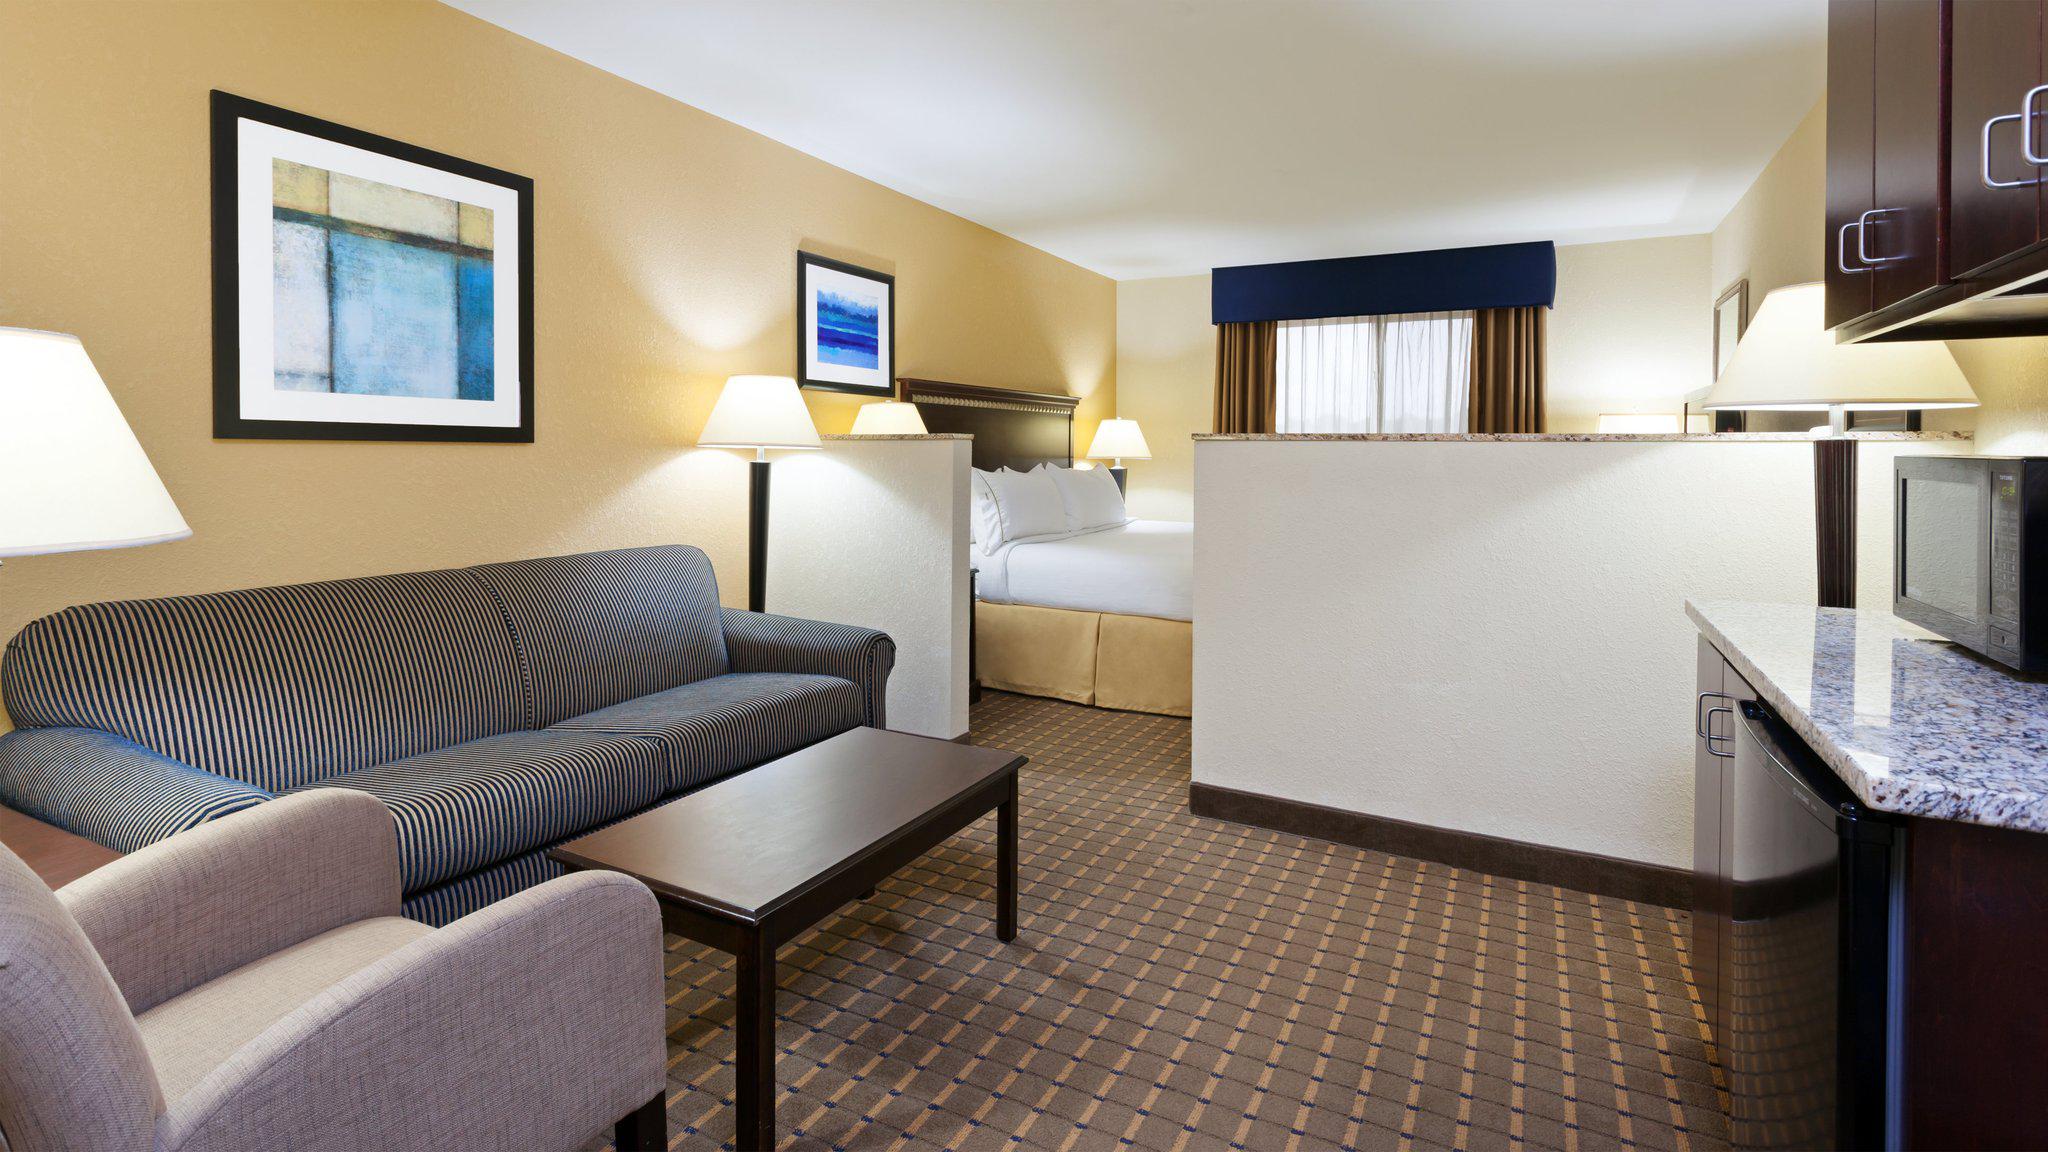 Holiday Inn Express & Suites Allentown West, an IHG Hotel Allentown (610)530-5545